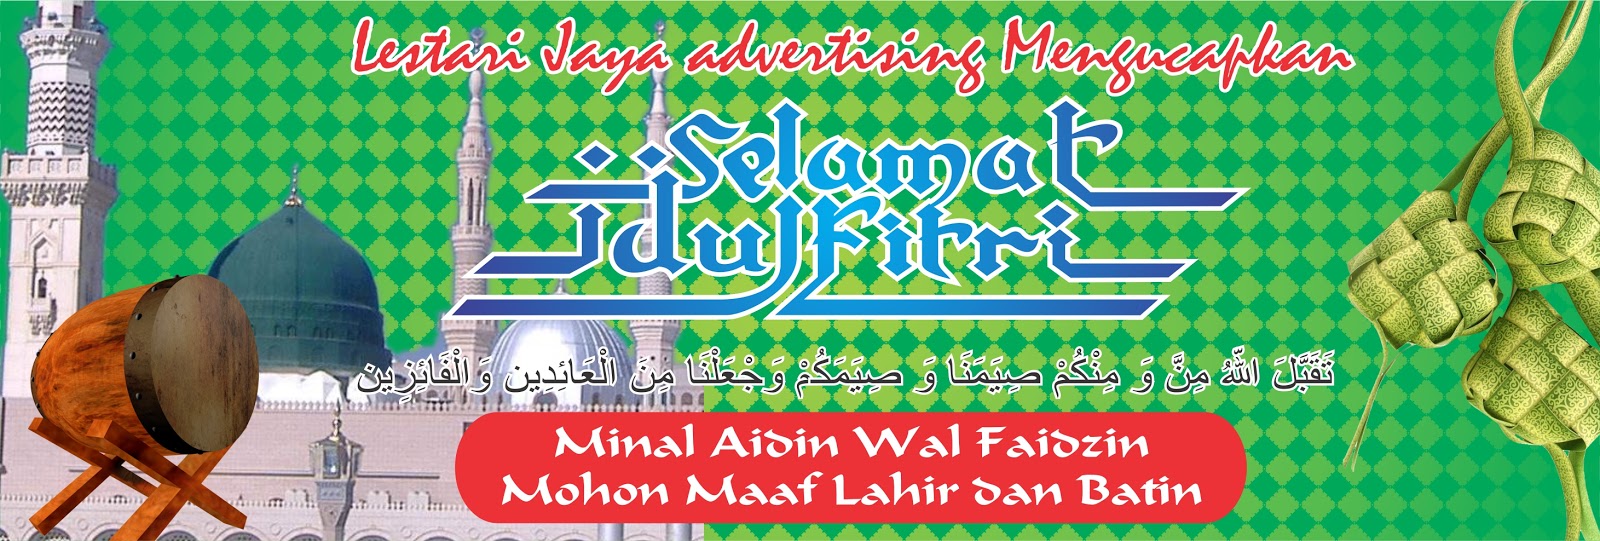 Lestari Jaya Advertising Contoh Spanduk Selamat Idul 